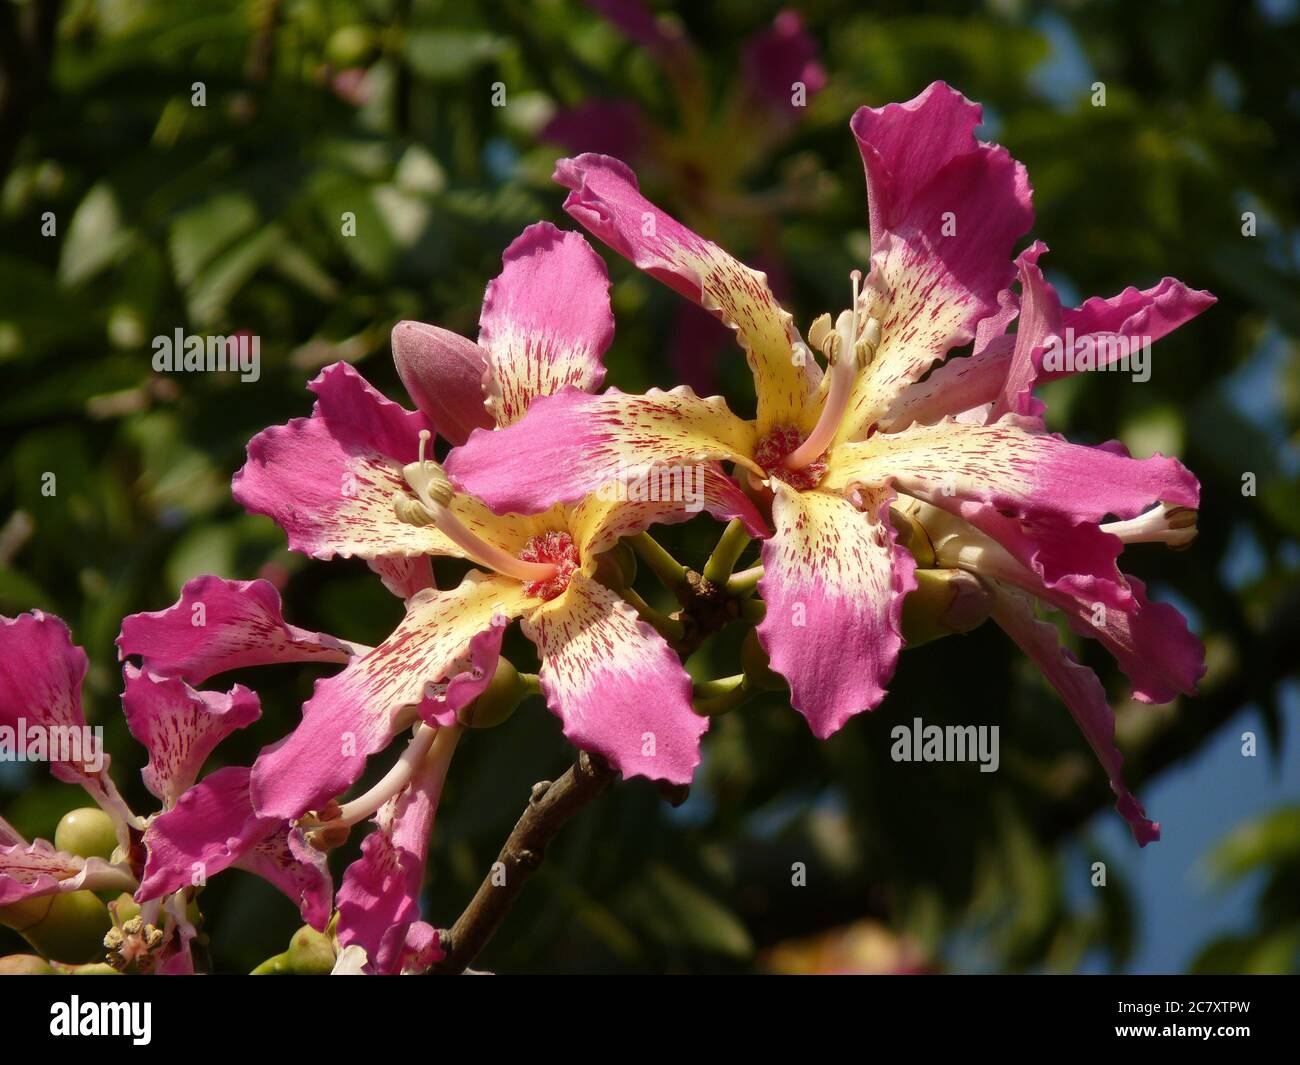 Nahaufnahme von schönen Blumen, die auf einer Seidenseide wachsen Baum unter dem Sonnenlicht Stockfoto